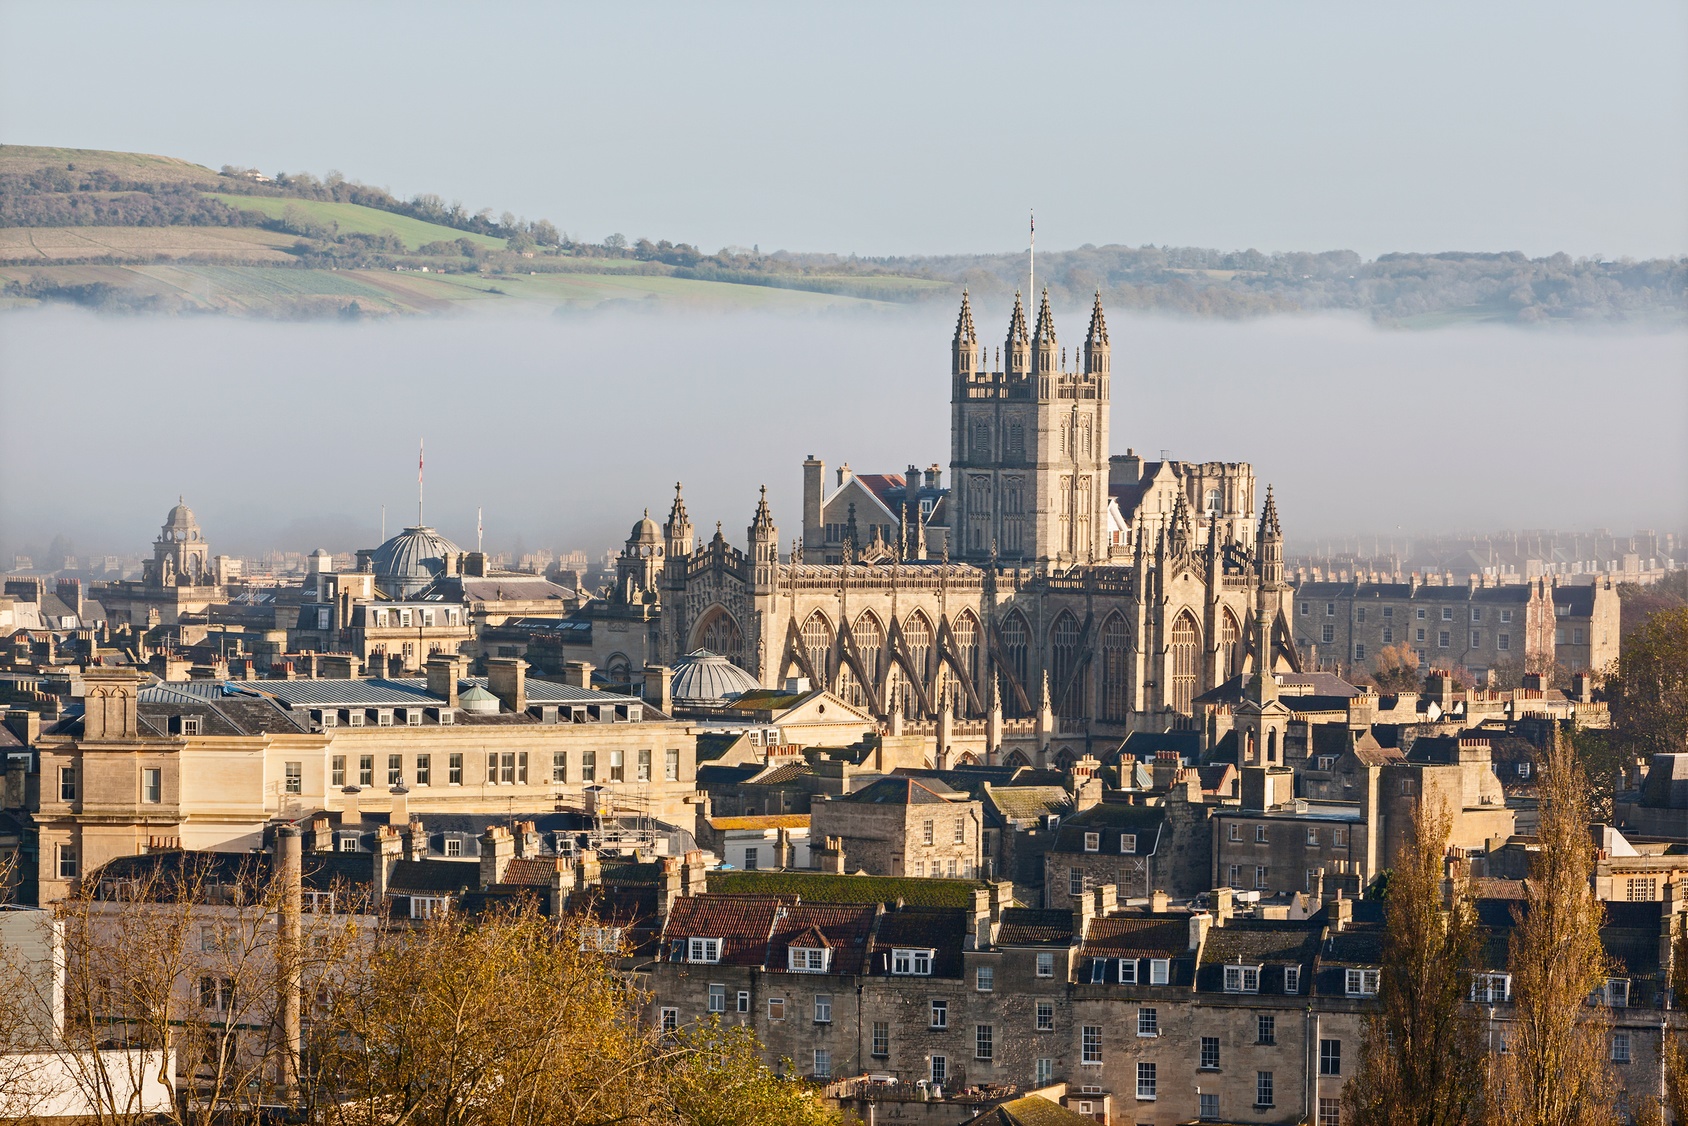 The historic city of Bath shrouded in mist on an autumn morning